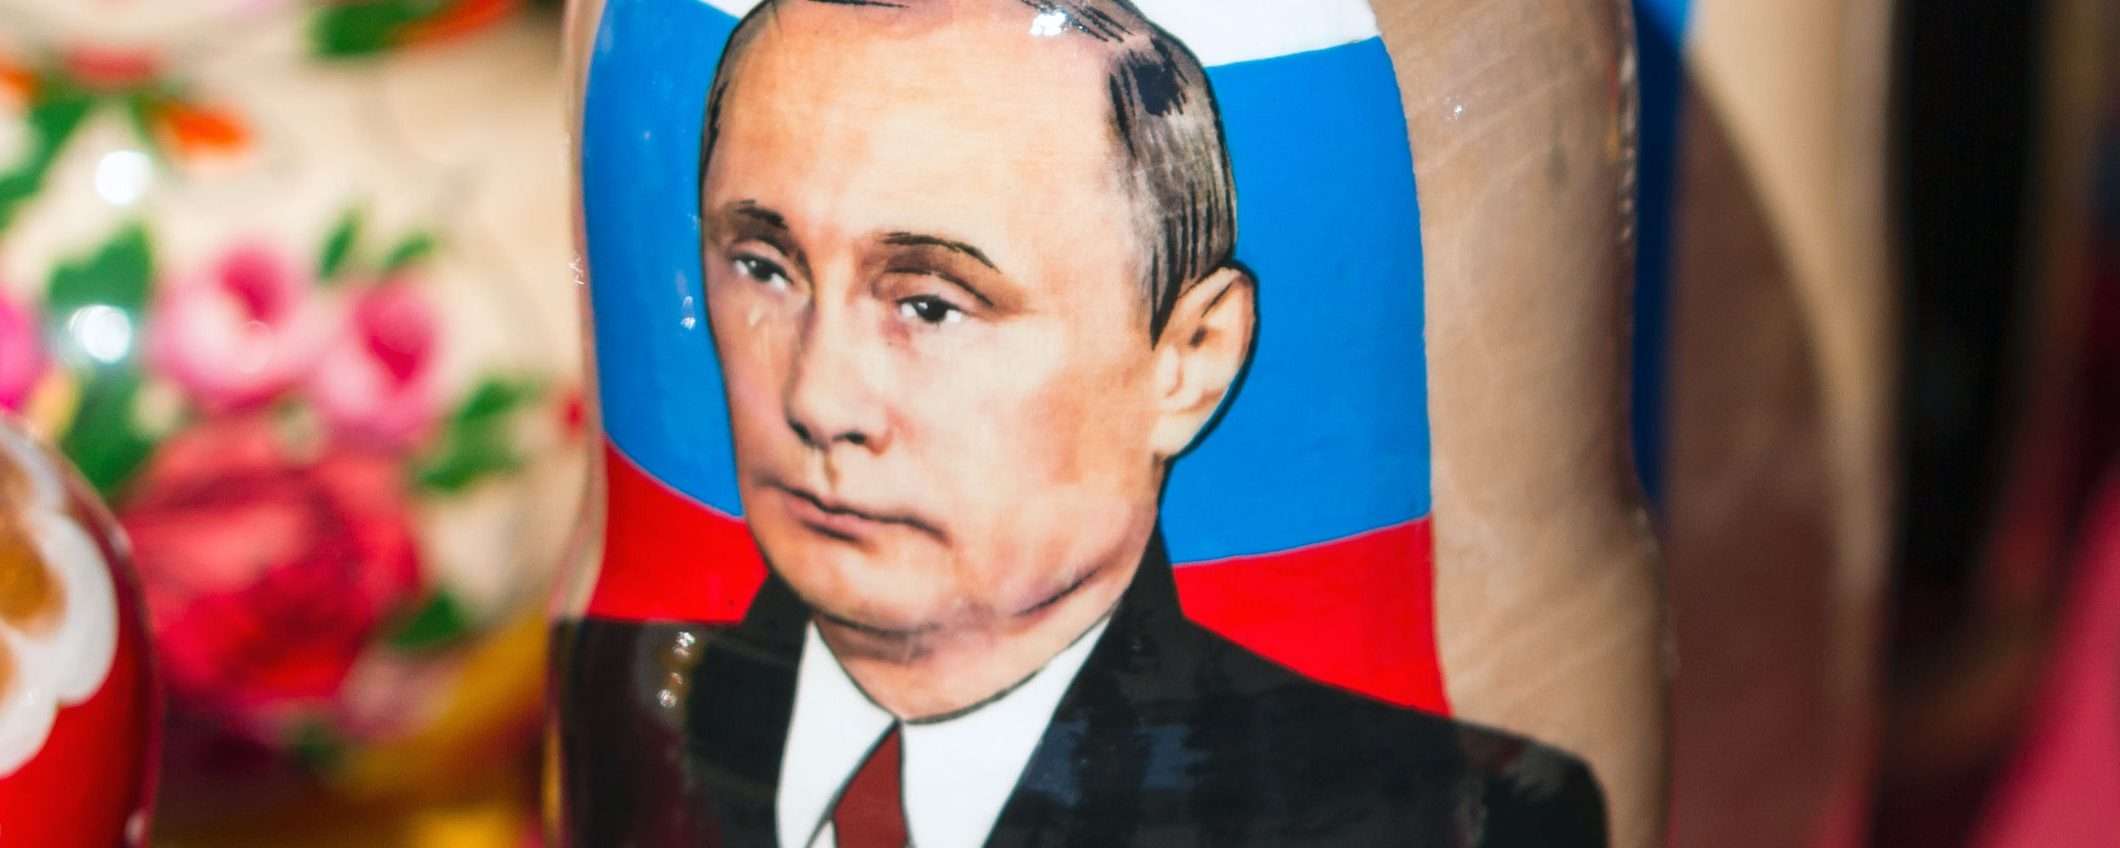 Sfido Putin a trovare un buon titolo per questo articolo